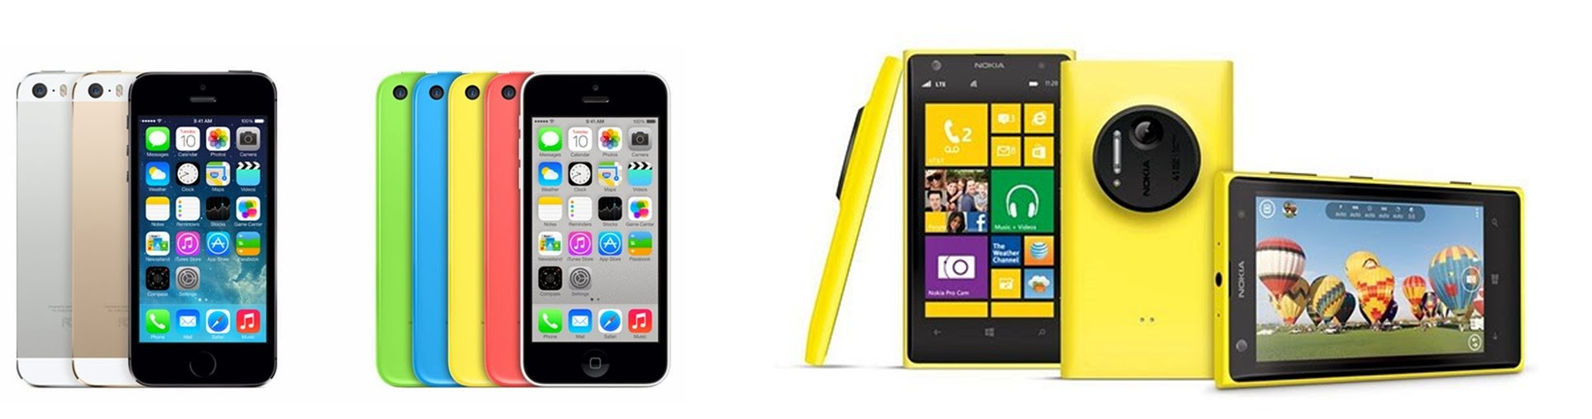 Apple Iphone 5S, Apple Iphone 5C in Nokia Lumia 1020.